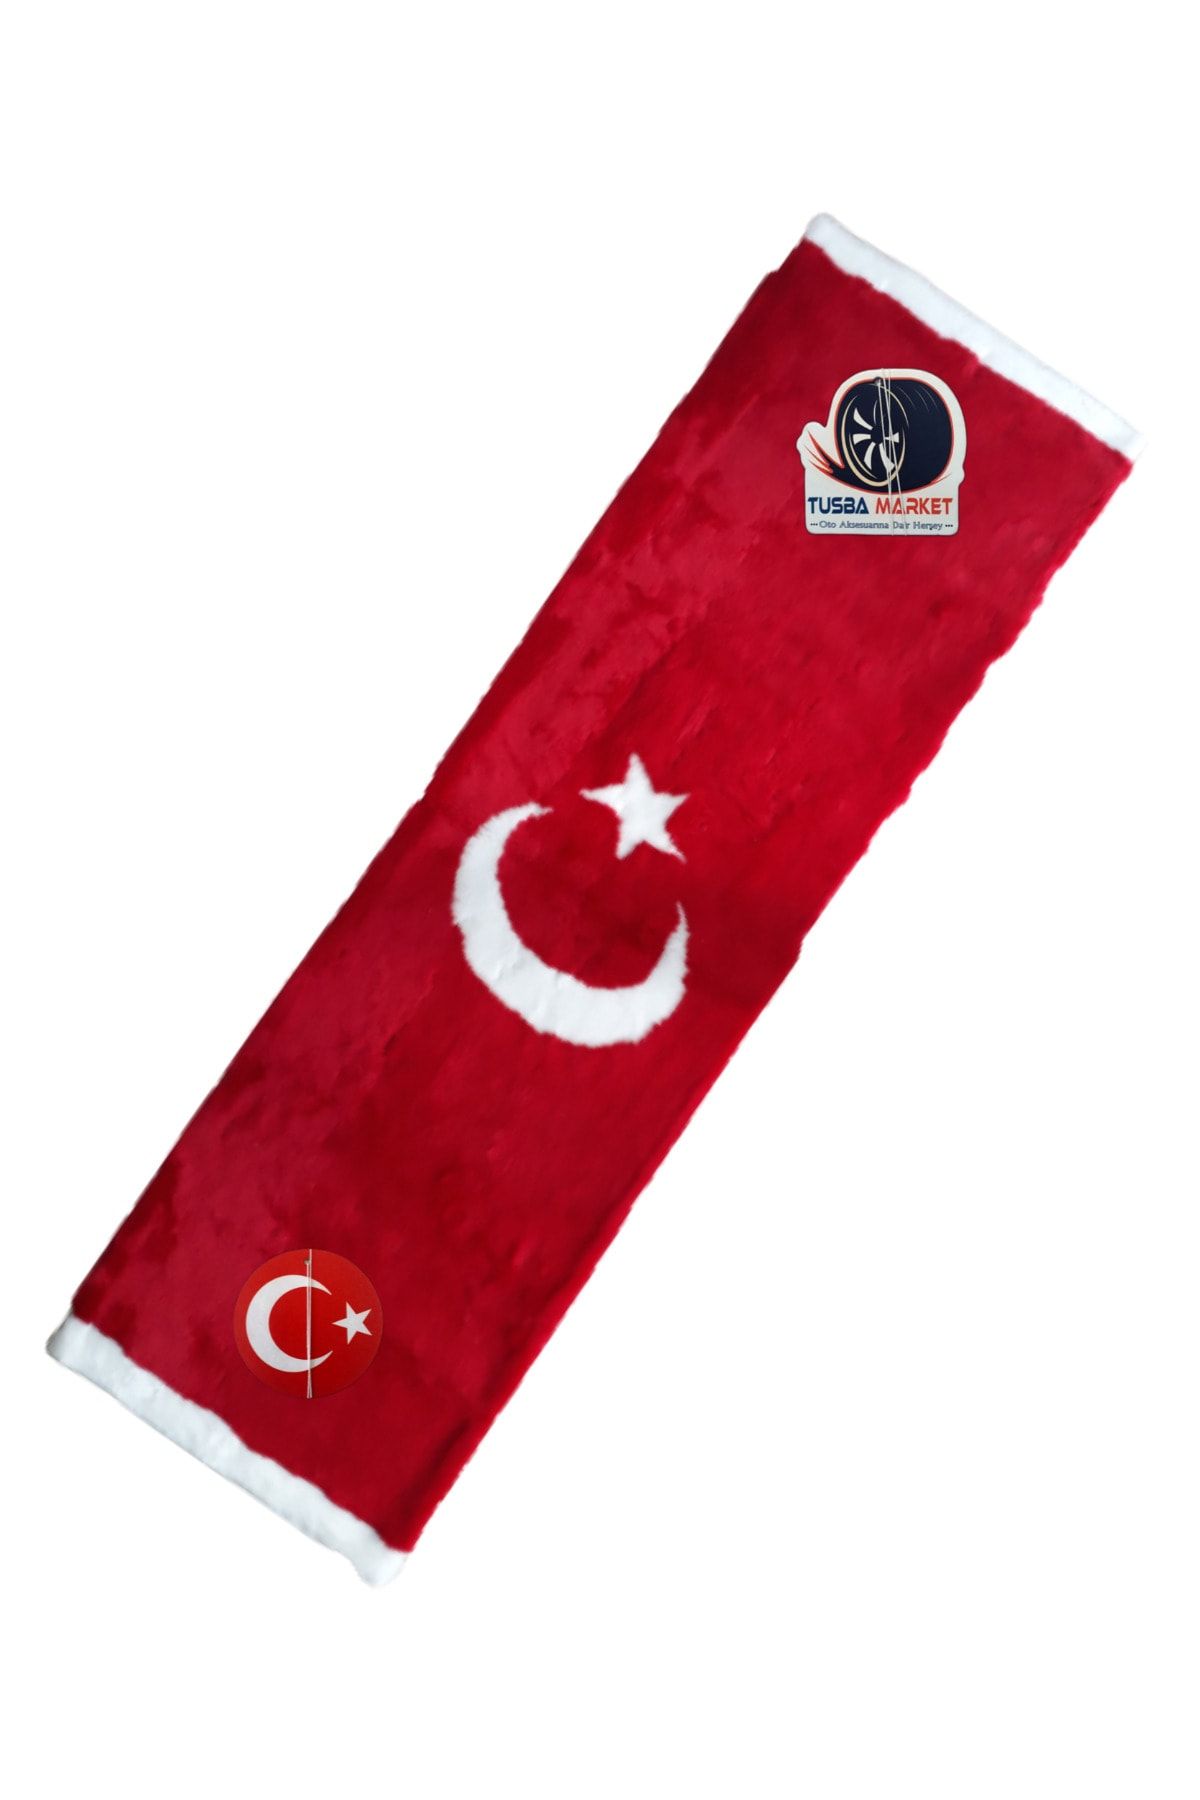 TUSBA MARKET Türk Bayrak'lı Oto Torpido Pandizot Üstü Peluş Halı & Ayyıldız Oto Torpido Üstü Peluş Örtü